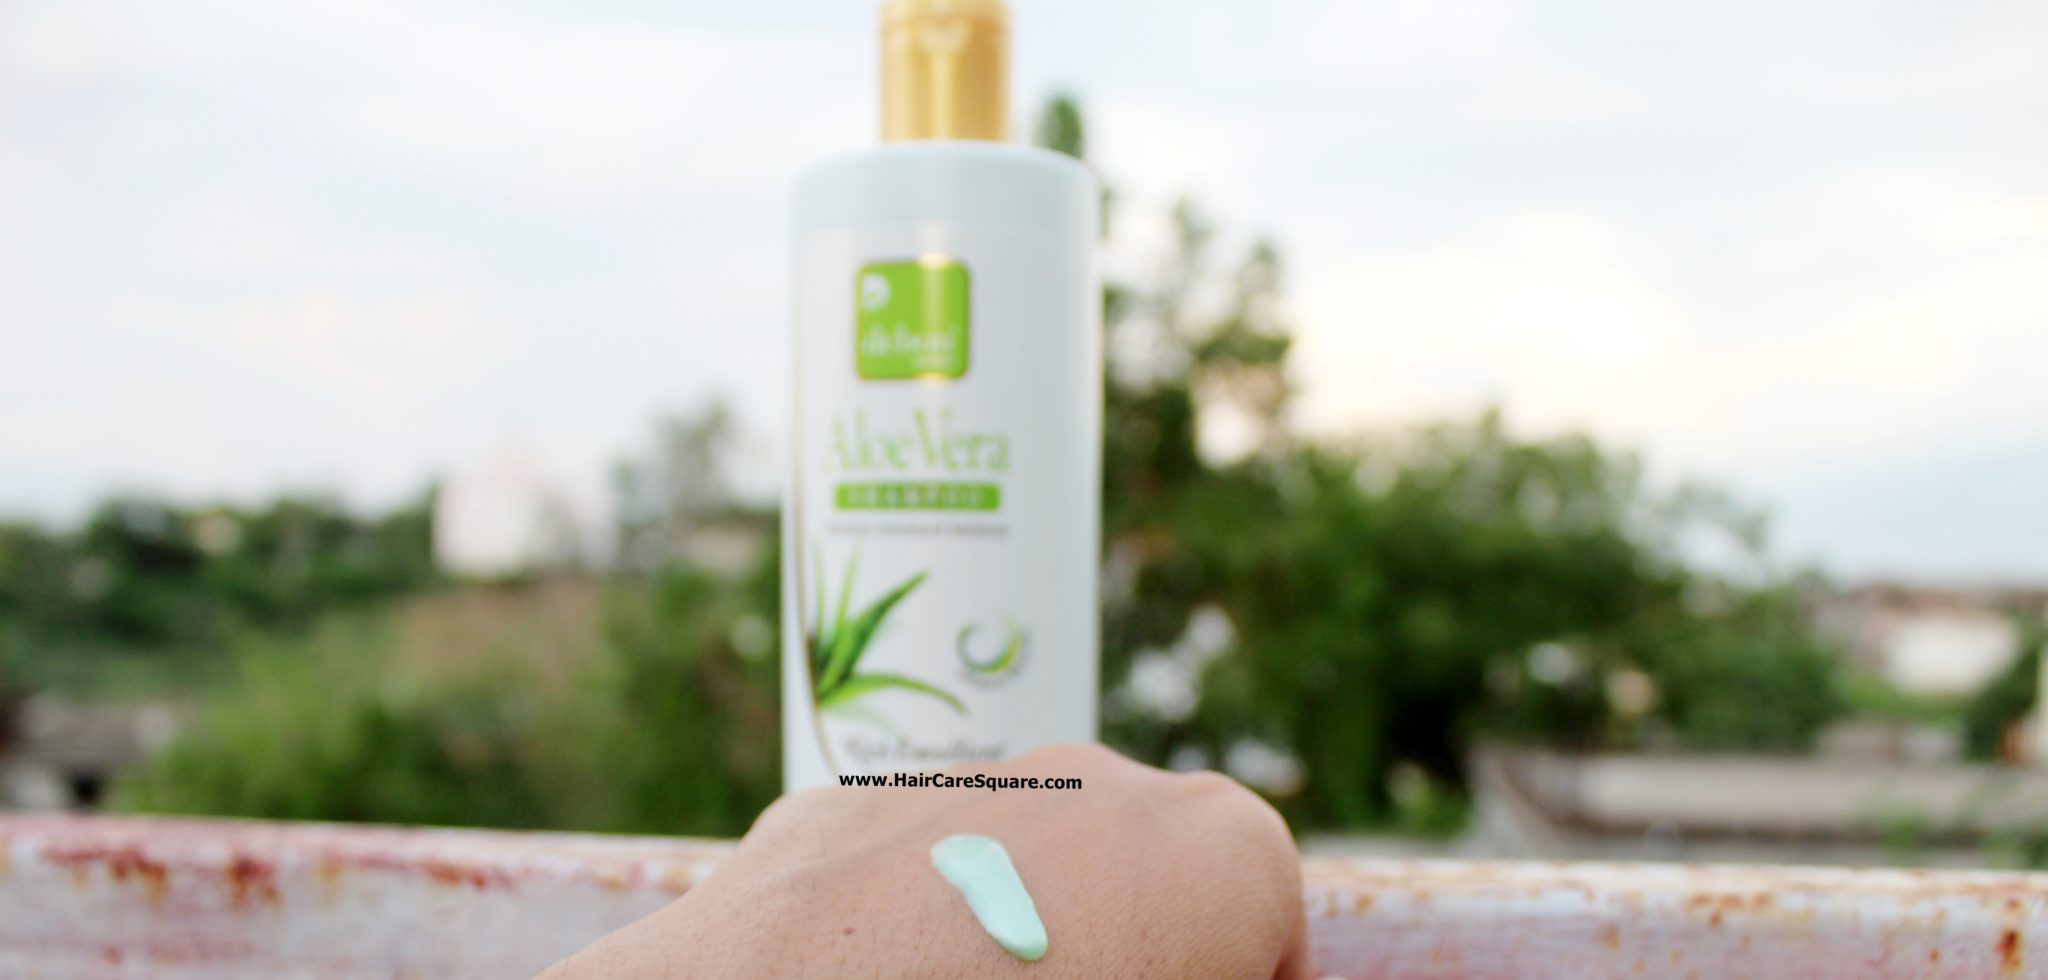 Debon Herbals Aloe Vera Shampoo Review